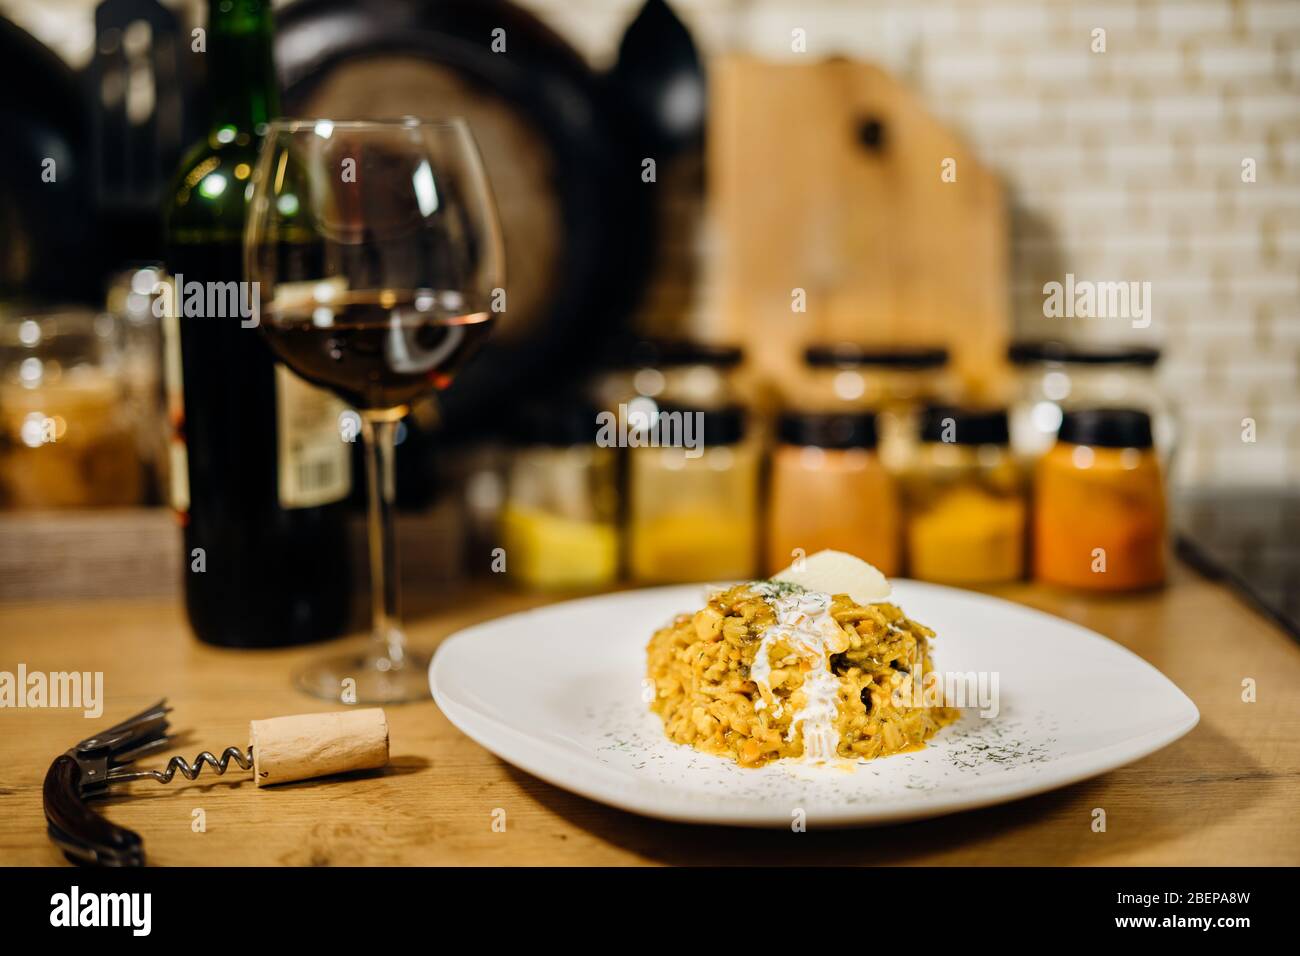 Gelbes Kurkuma-Risotto mit wilden Steinpilzen Platte mit Rotwein serviert.Safranreis mit Parmesan-Käse.Italienische traditionelle Rezepte mit Wein Stockfoto